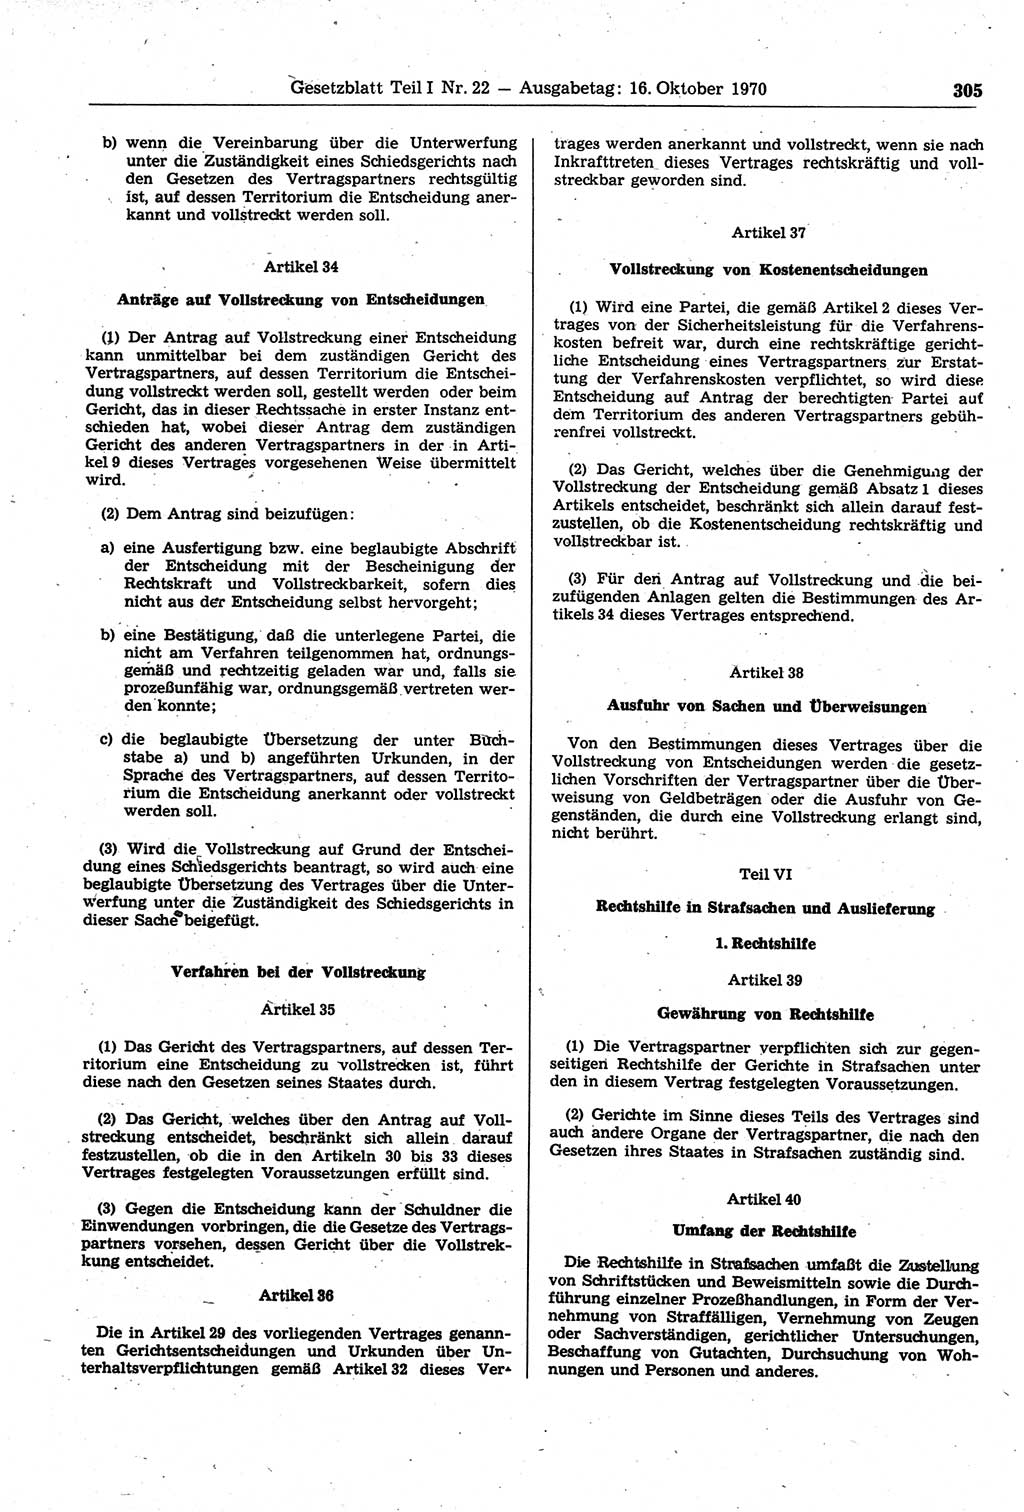 Gesetzblatt (GBl.) der Deutschen Demokratischen Republik (DDR) Teil Ⅰ 1970, Seite 305 (GBl. DDR Ⅰ 1970, S. 305)